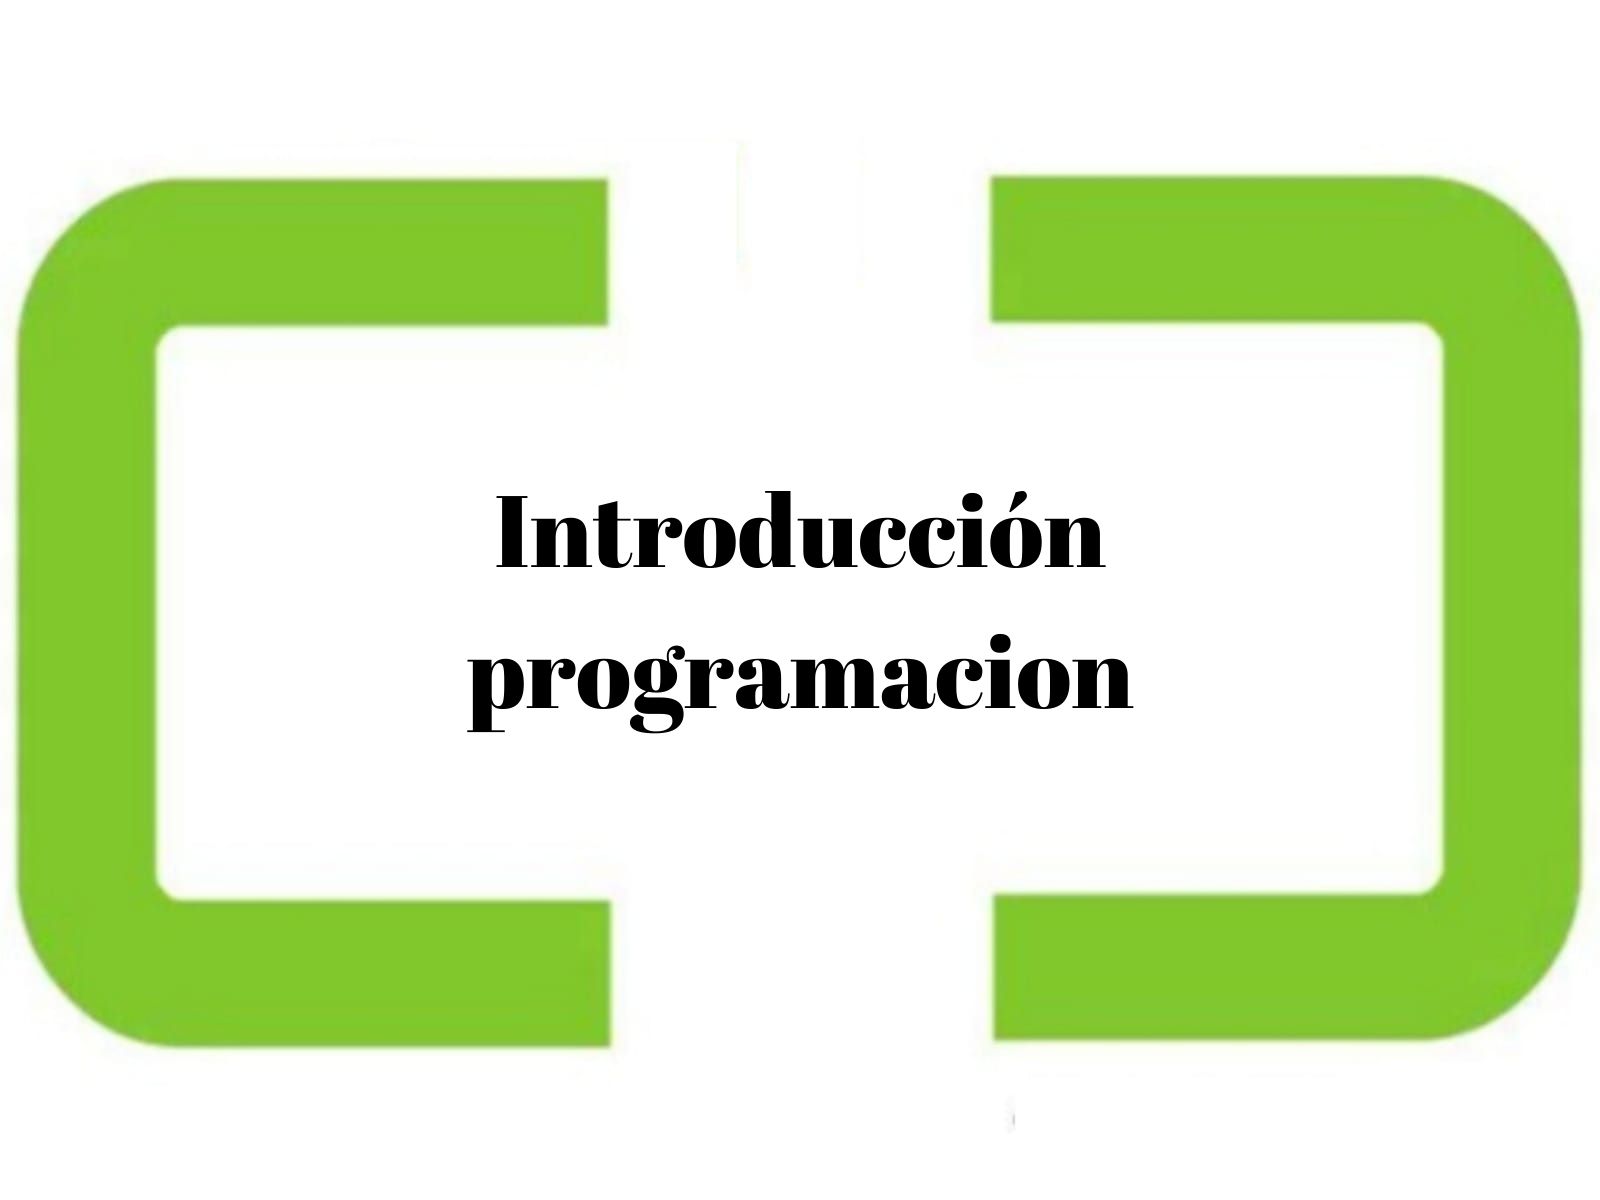 Introduccion programacion